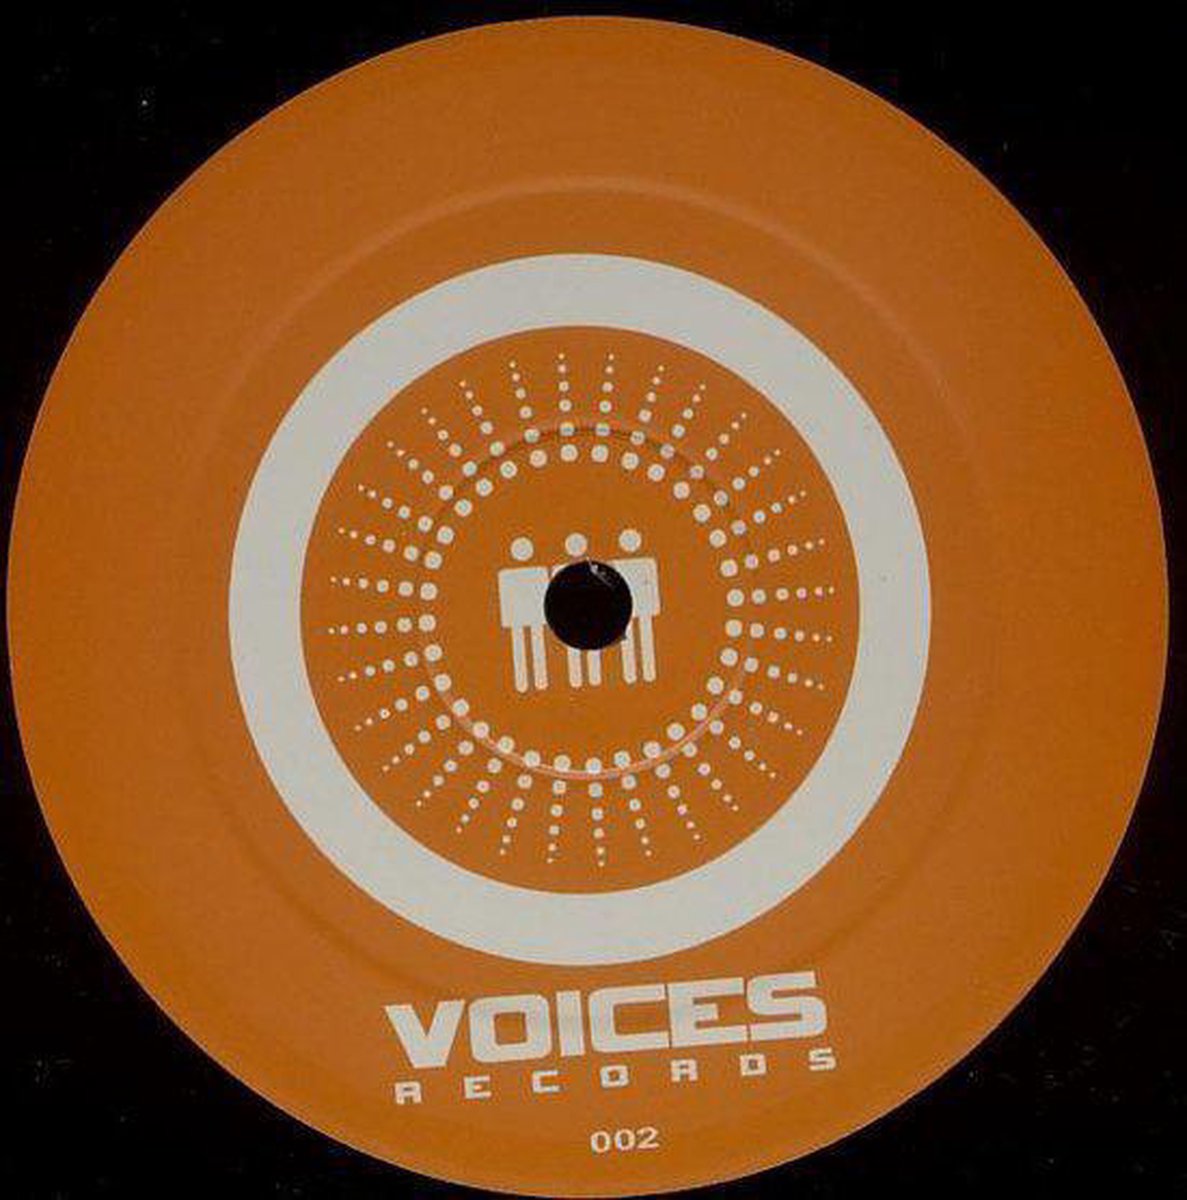 Voices - Steve Angello